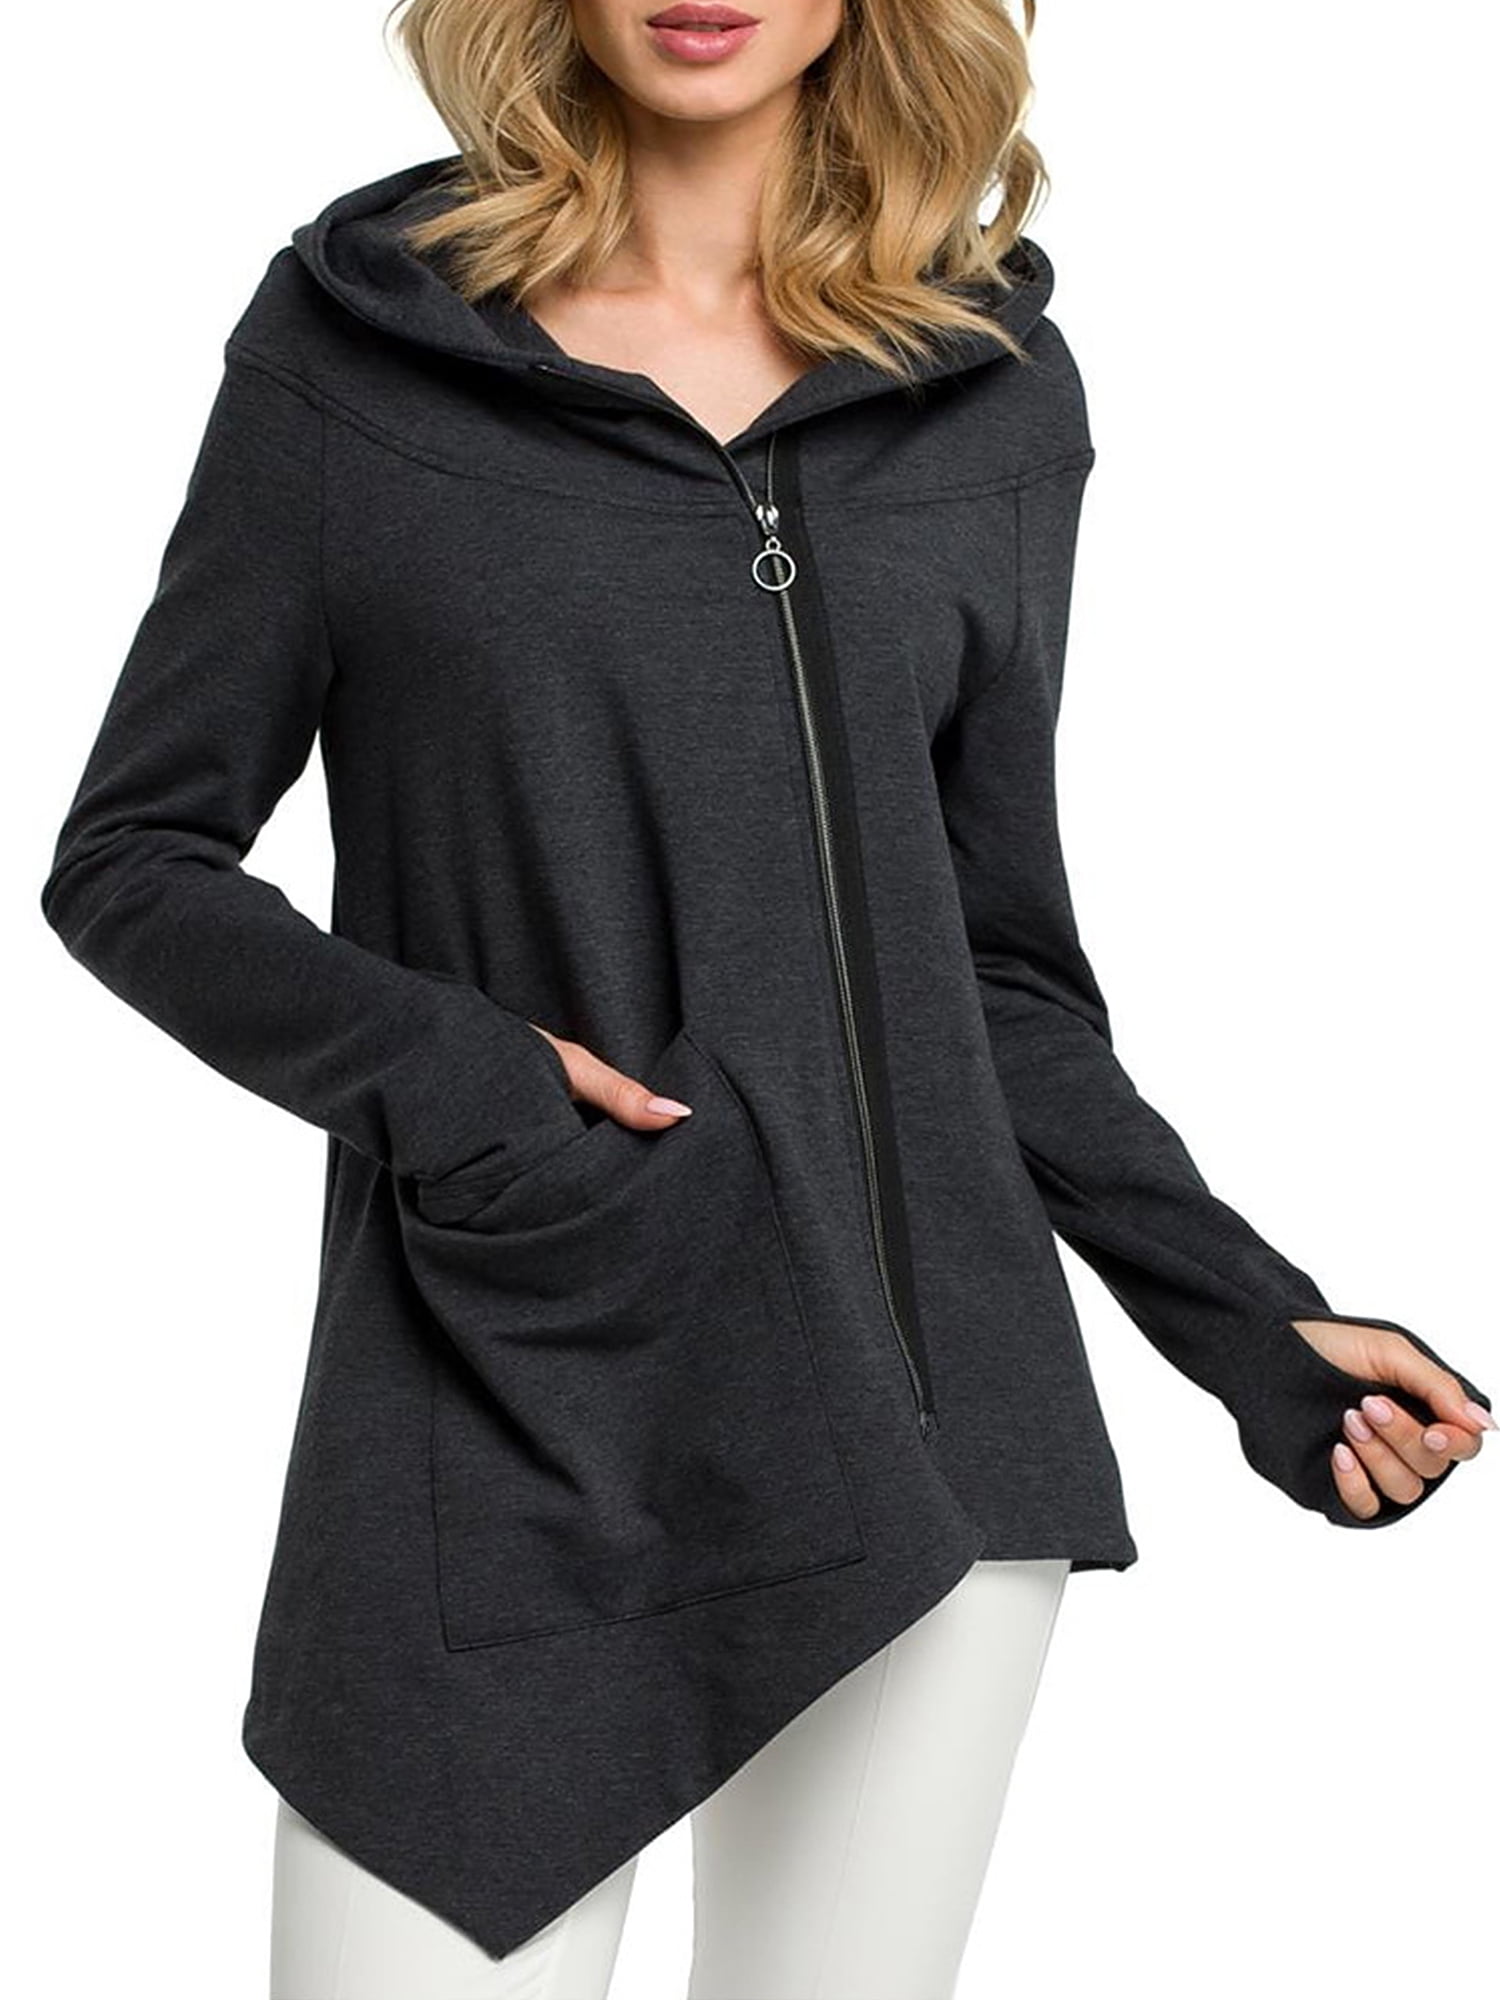 Womens Long Sleeve Hoodies Sweater Pullover Hooded Sweatshirt Coat Jacket Tops 